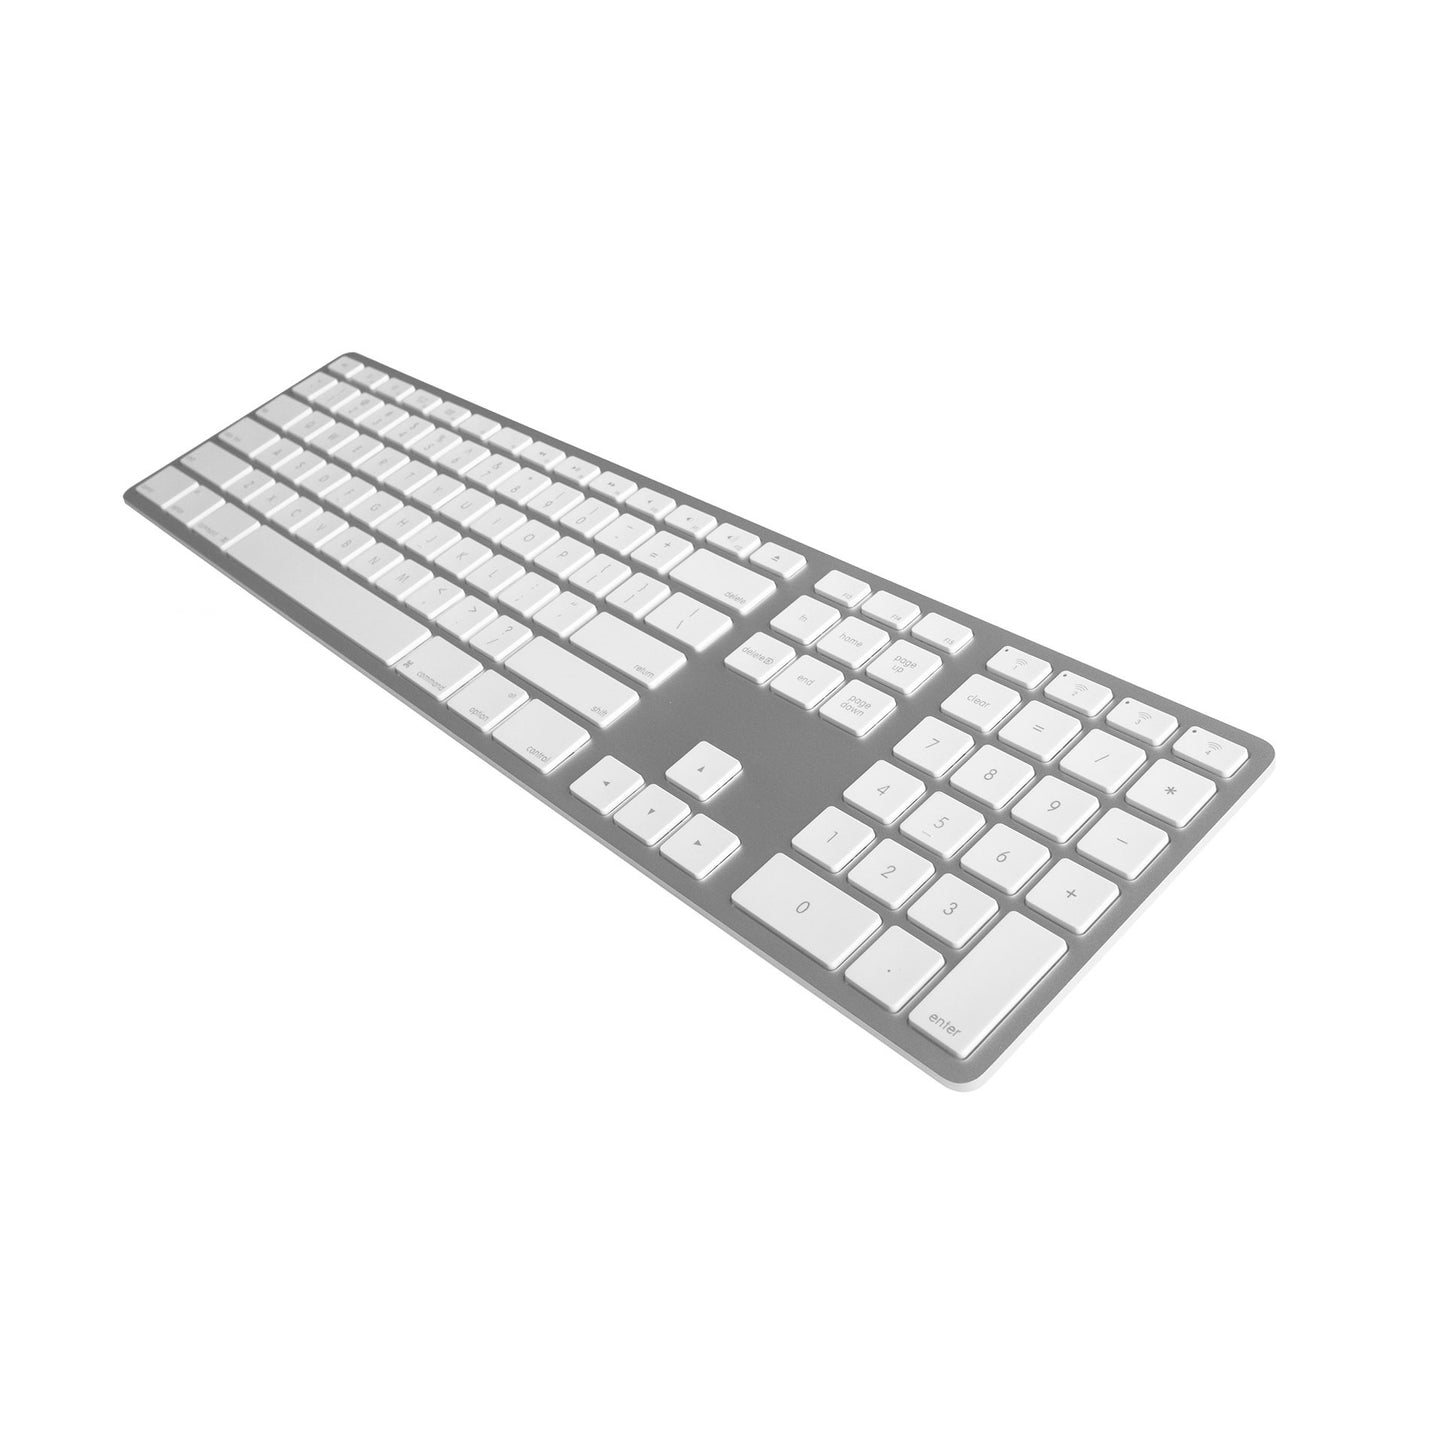 Backlit Wireless Aluminum Keyboard - Silver